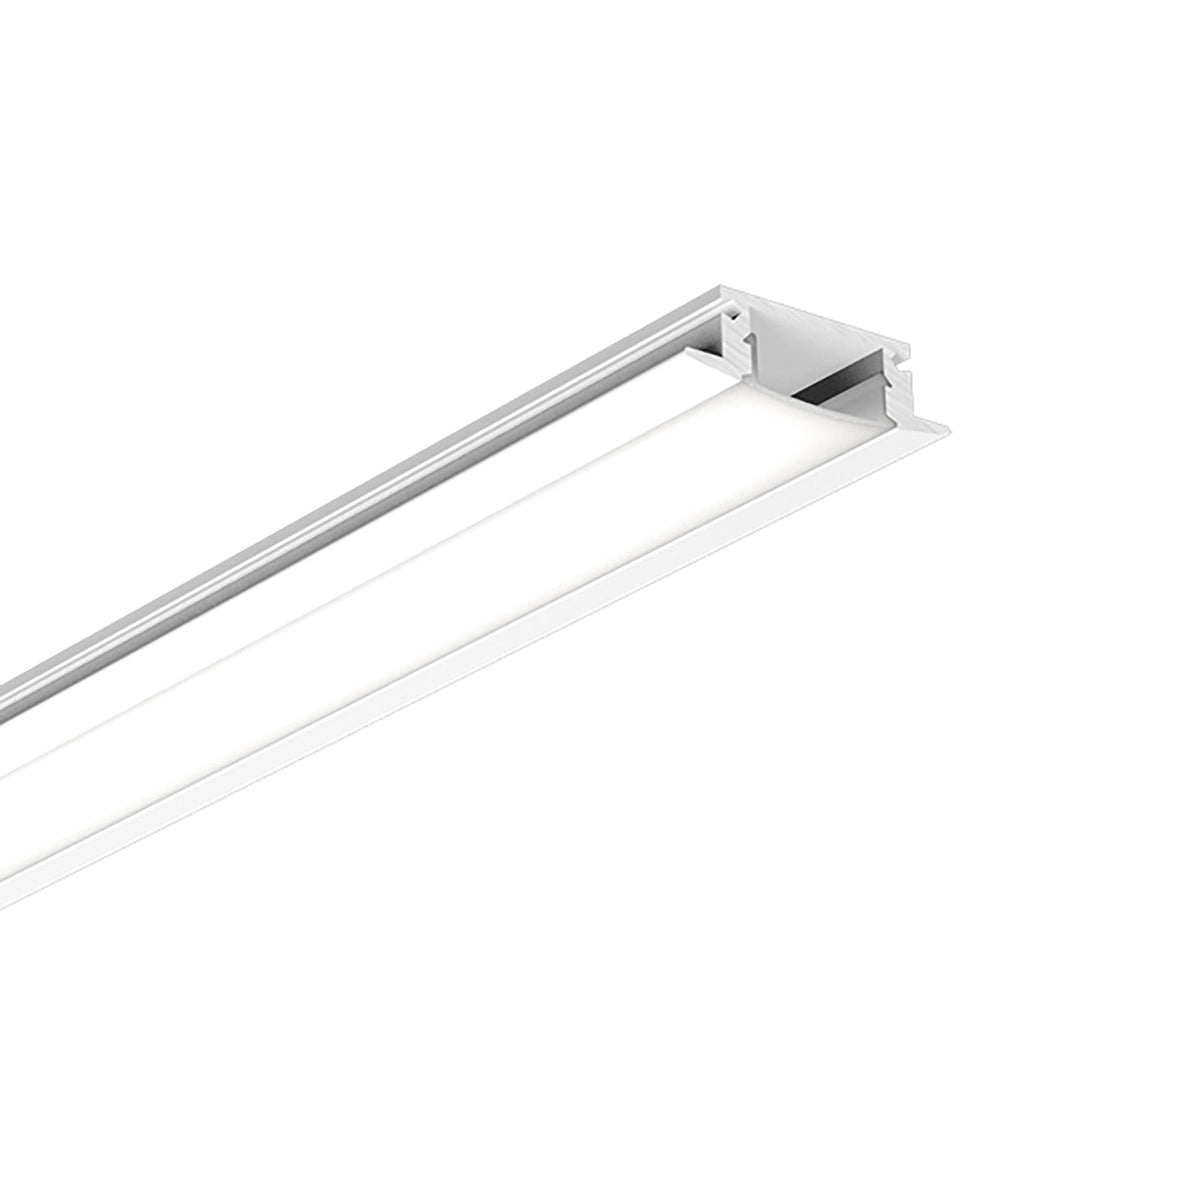 G.W.S. LED LED Aluminium Profile Recessed 014-Y2407